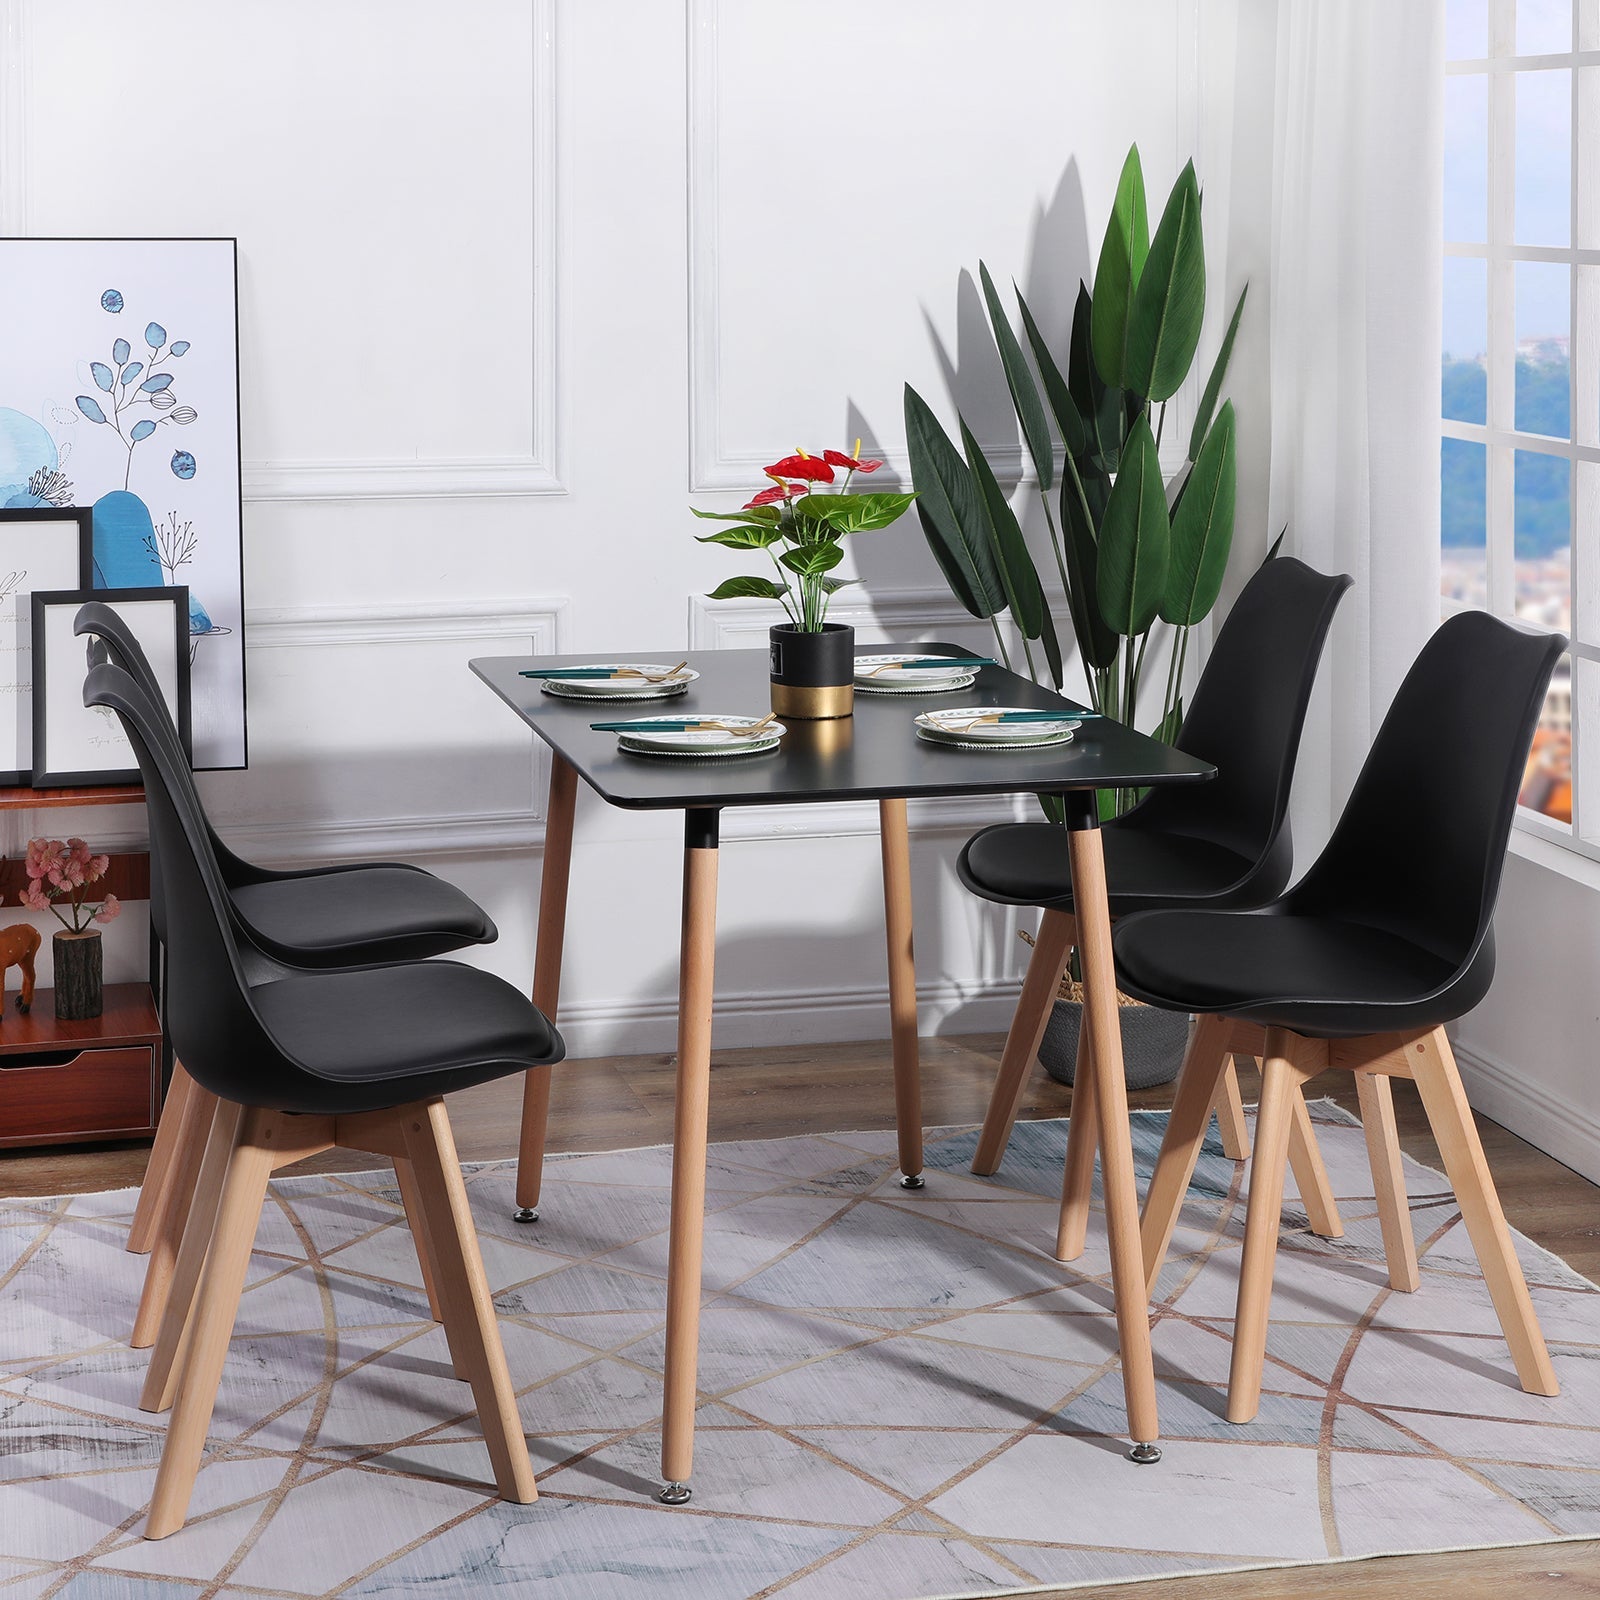 Chaise scandinave Sländak Woody noire 4 pieds bois métal noir croisé salle  à manger attente cuisine